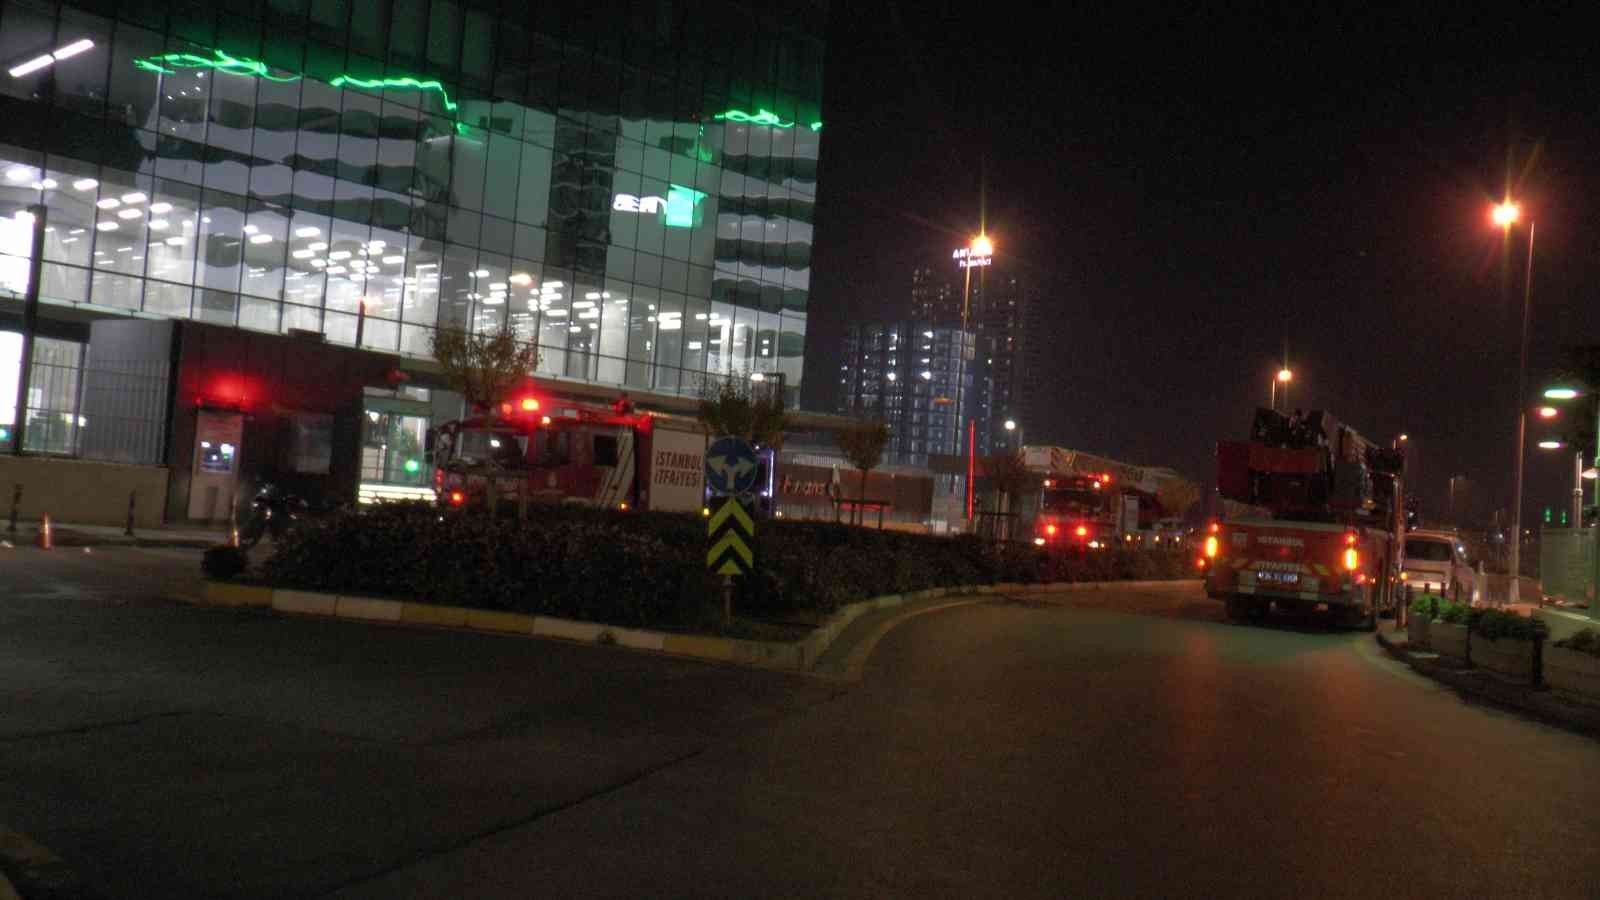 Ümraniye’de 24. katta işçi kurtarma operasyonu #istanbul